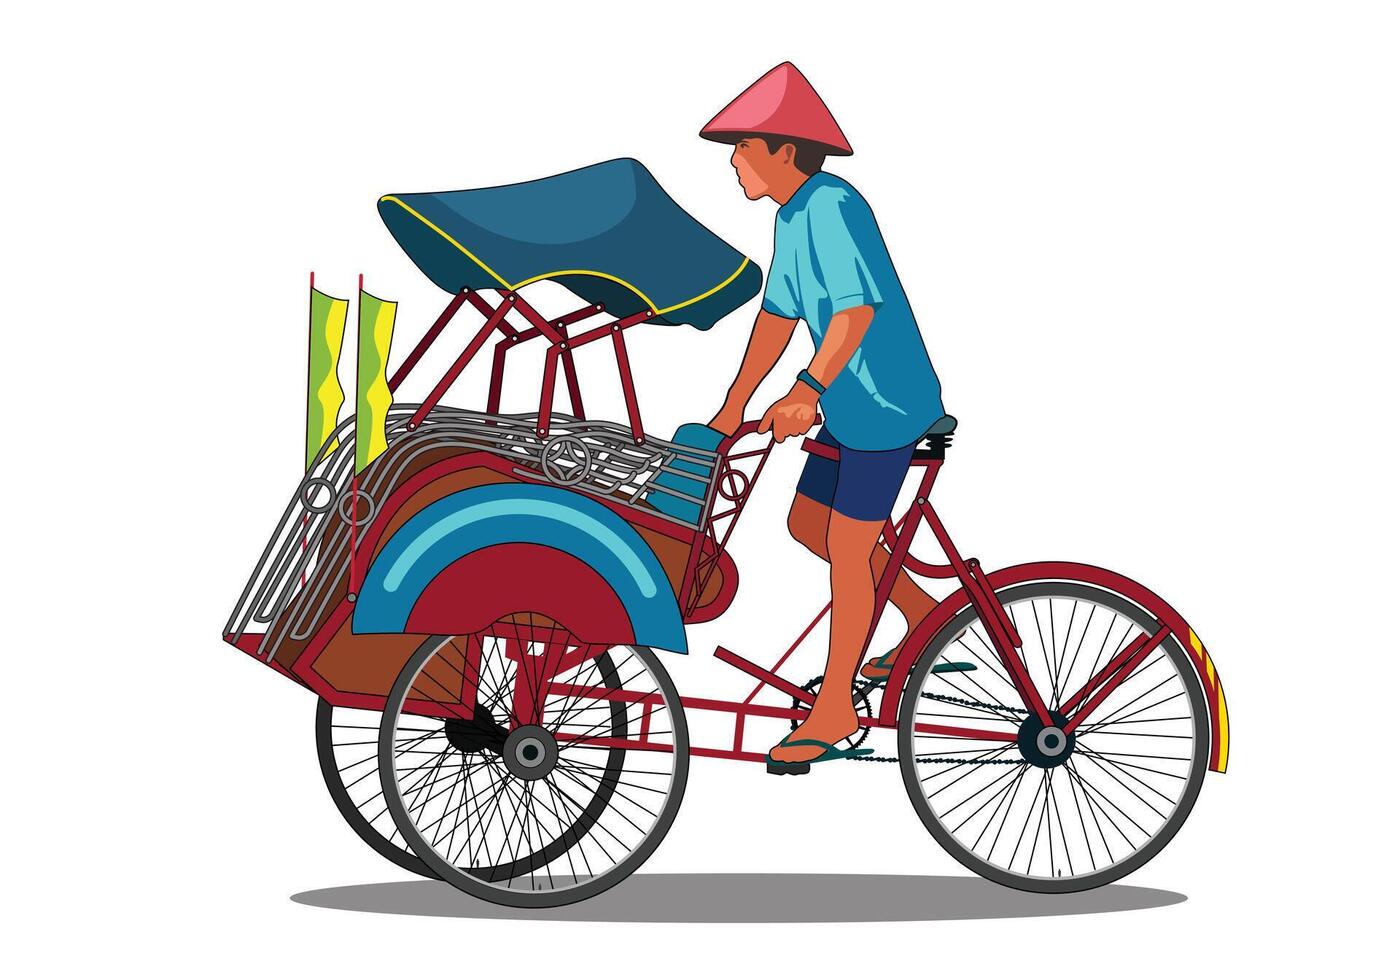 Rickshaw becak yogyakarta, A man riding bicycle rickshaw isolated on white background. vector